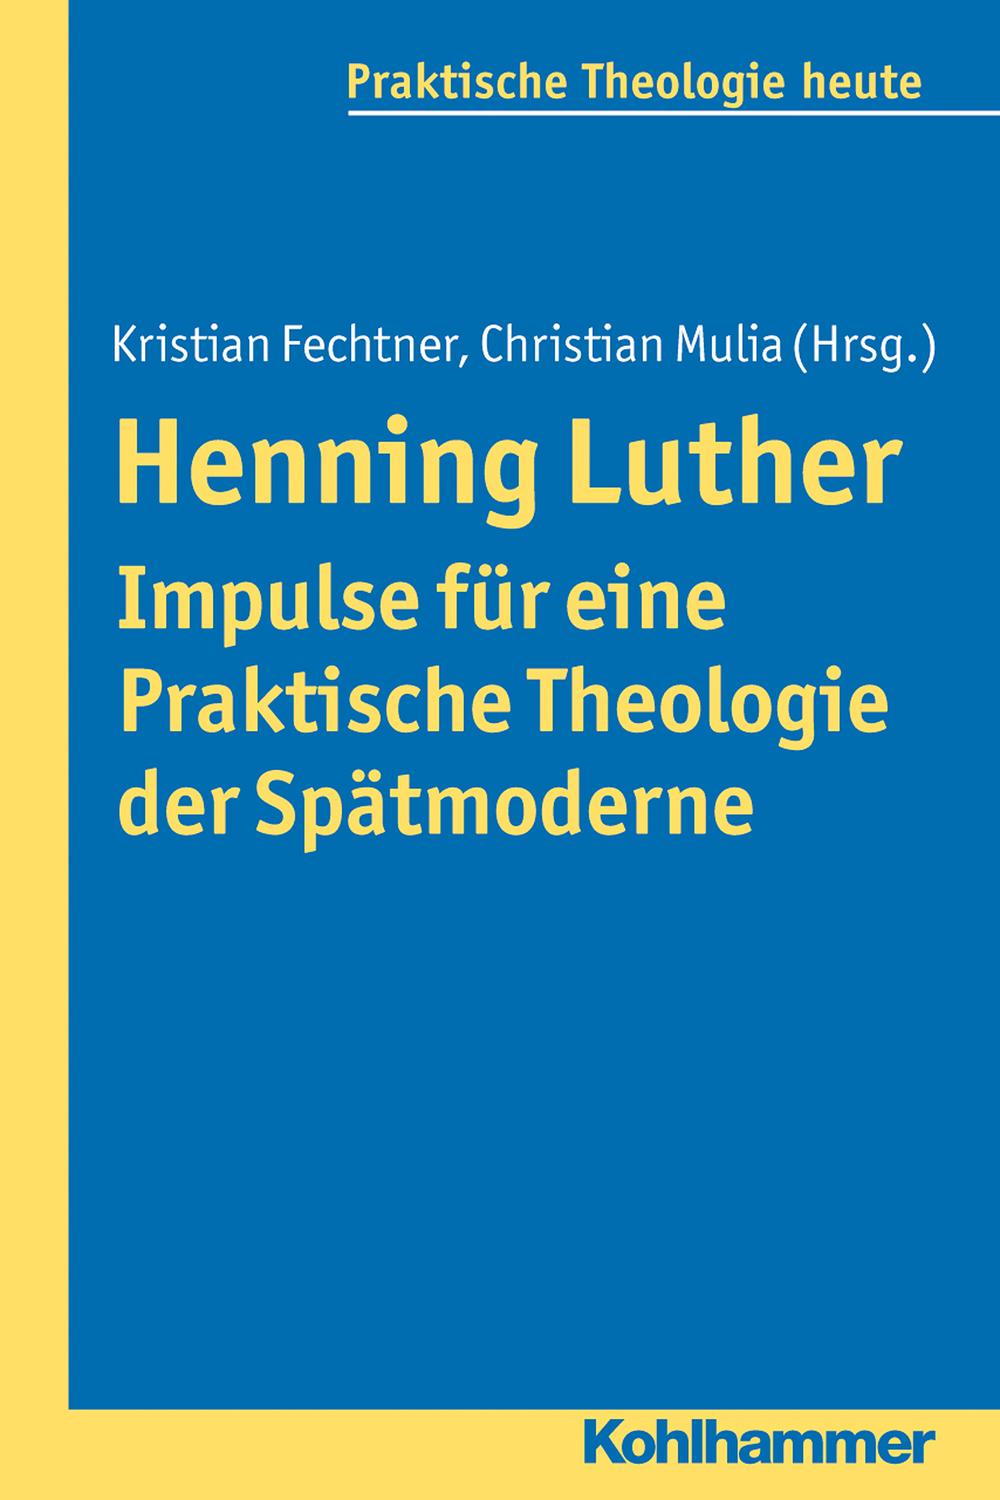 Henning Luther - Impulse für eine Praktische Theologie der Spätmoderne - Kristian Fechtner, Christian Mulia